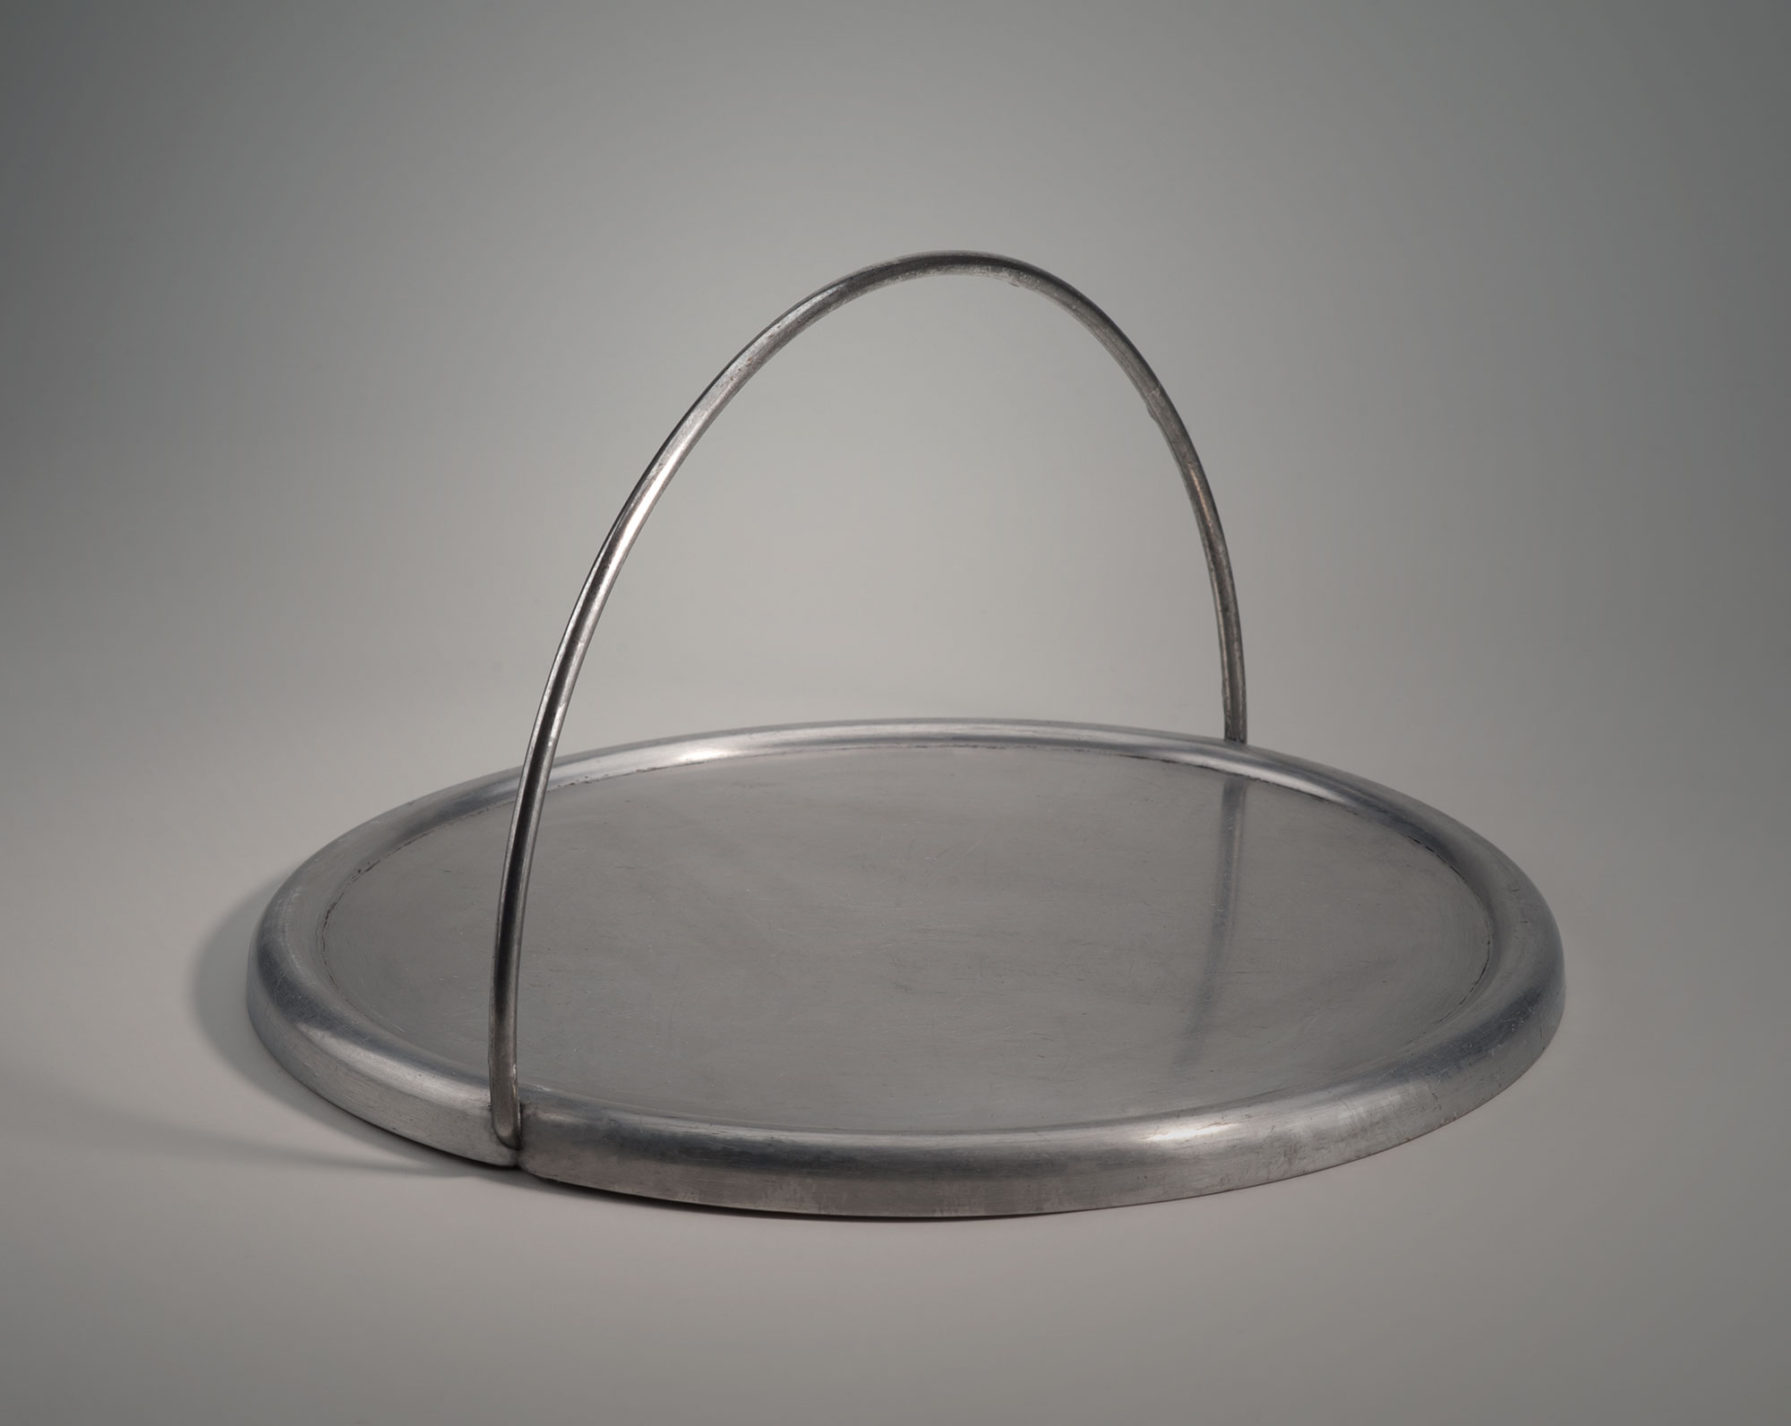 Crêpière ronde en aluminium avec poignée d’aluminium en demi-cercle repliable vers l’extérieur.